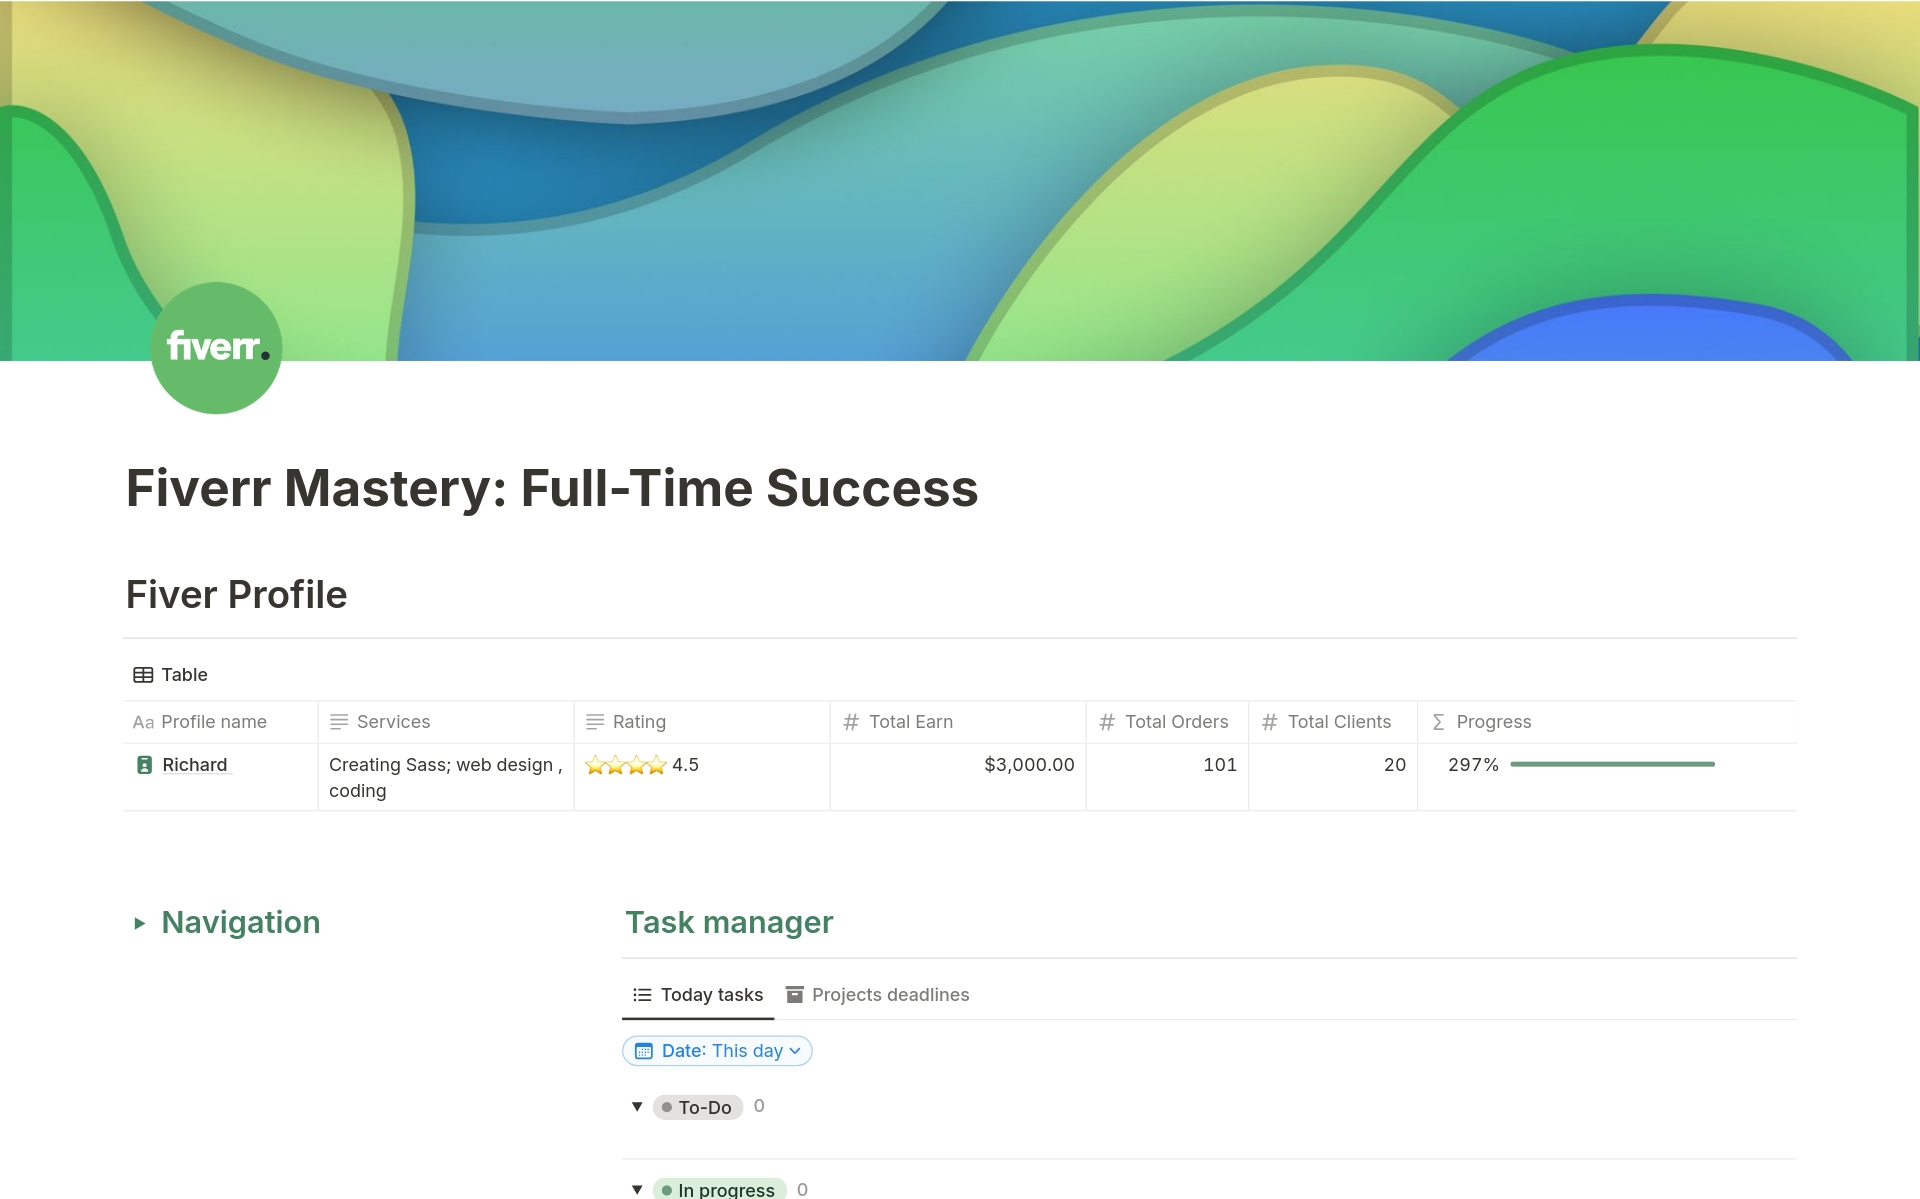 Vista previa de una plantilla para Fiverr Mastery: Full-Time Success